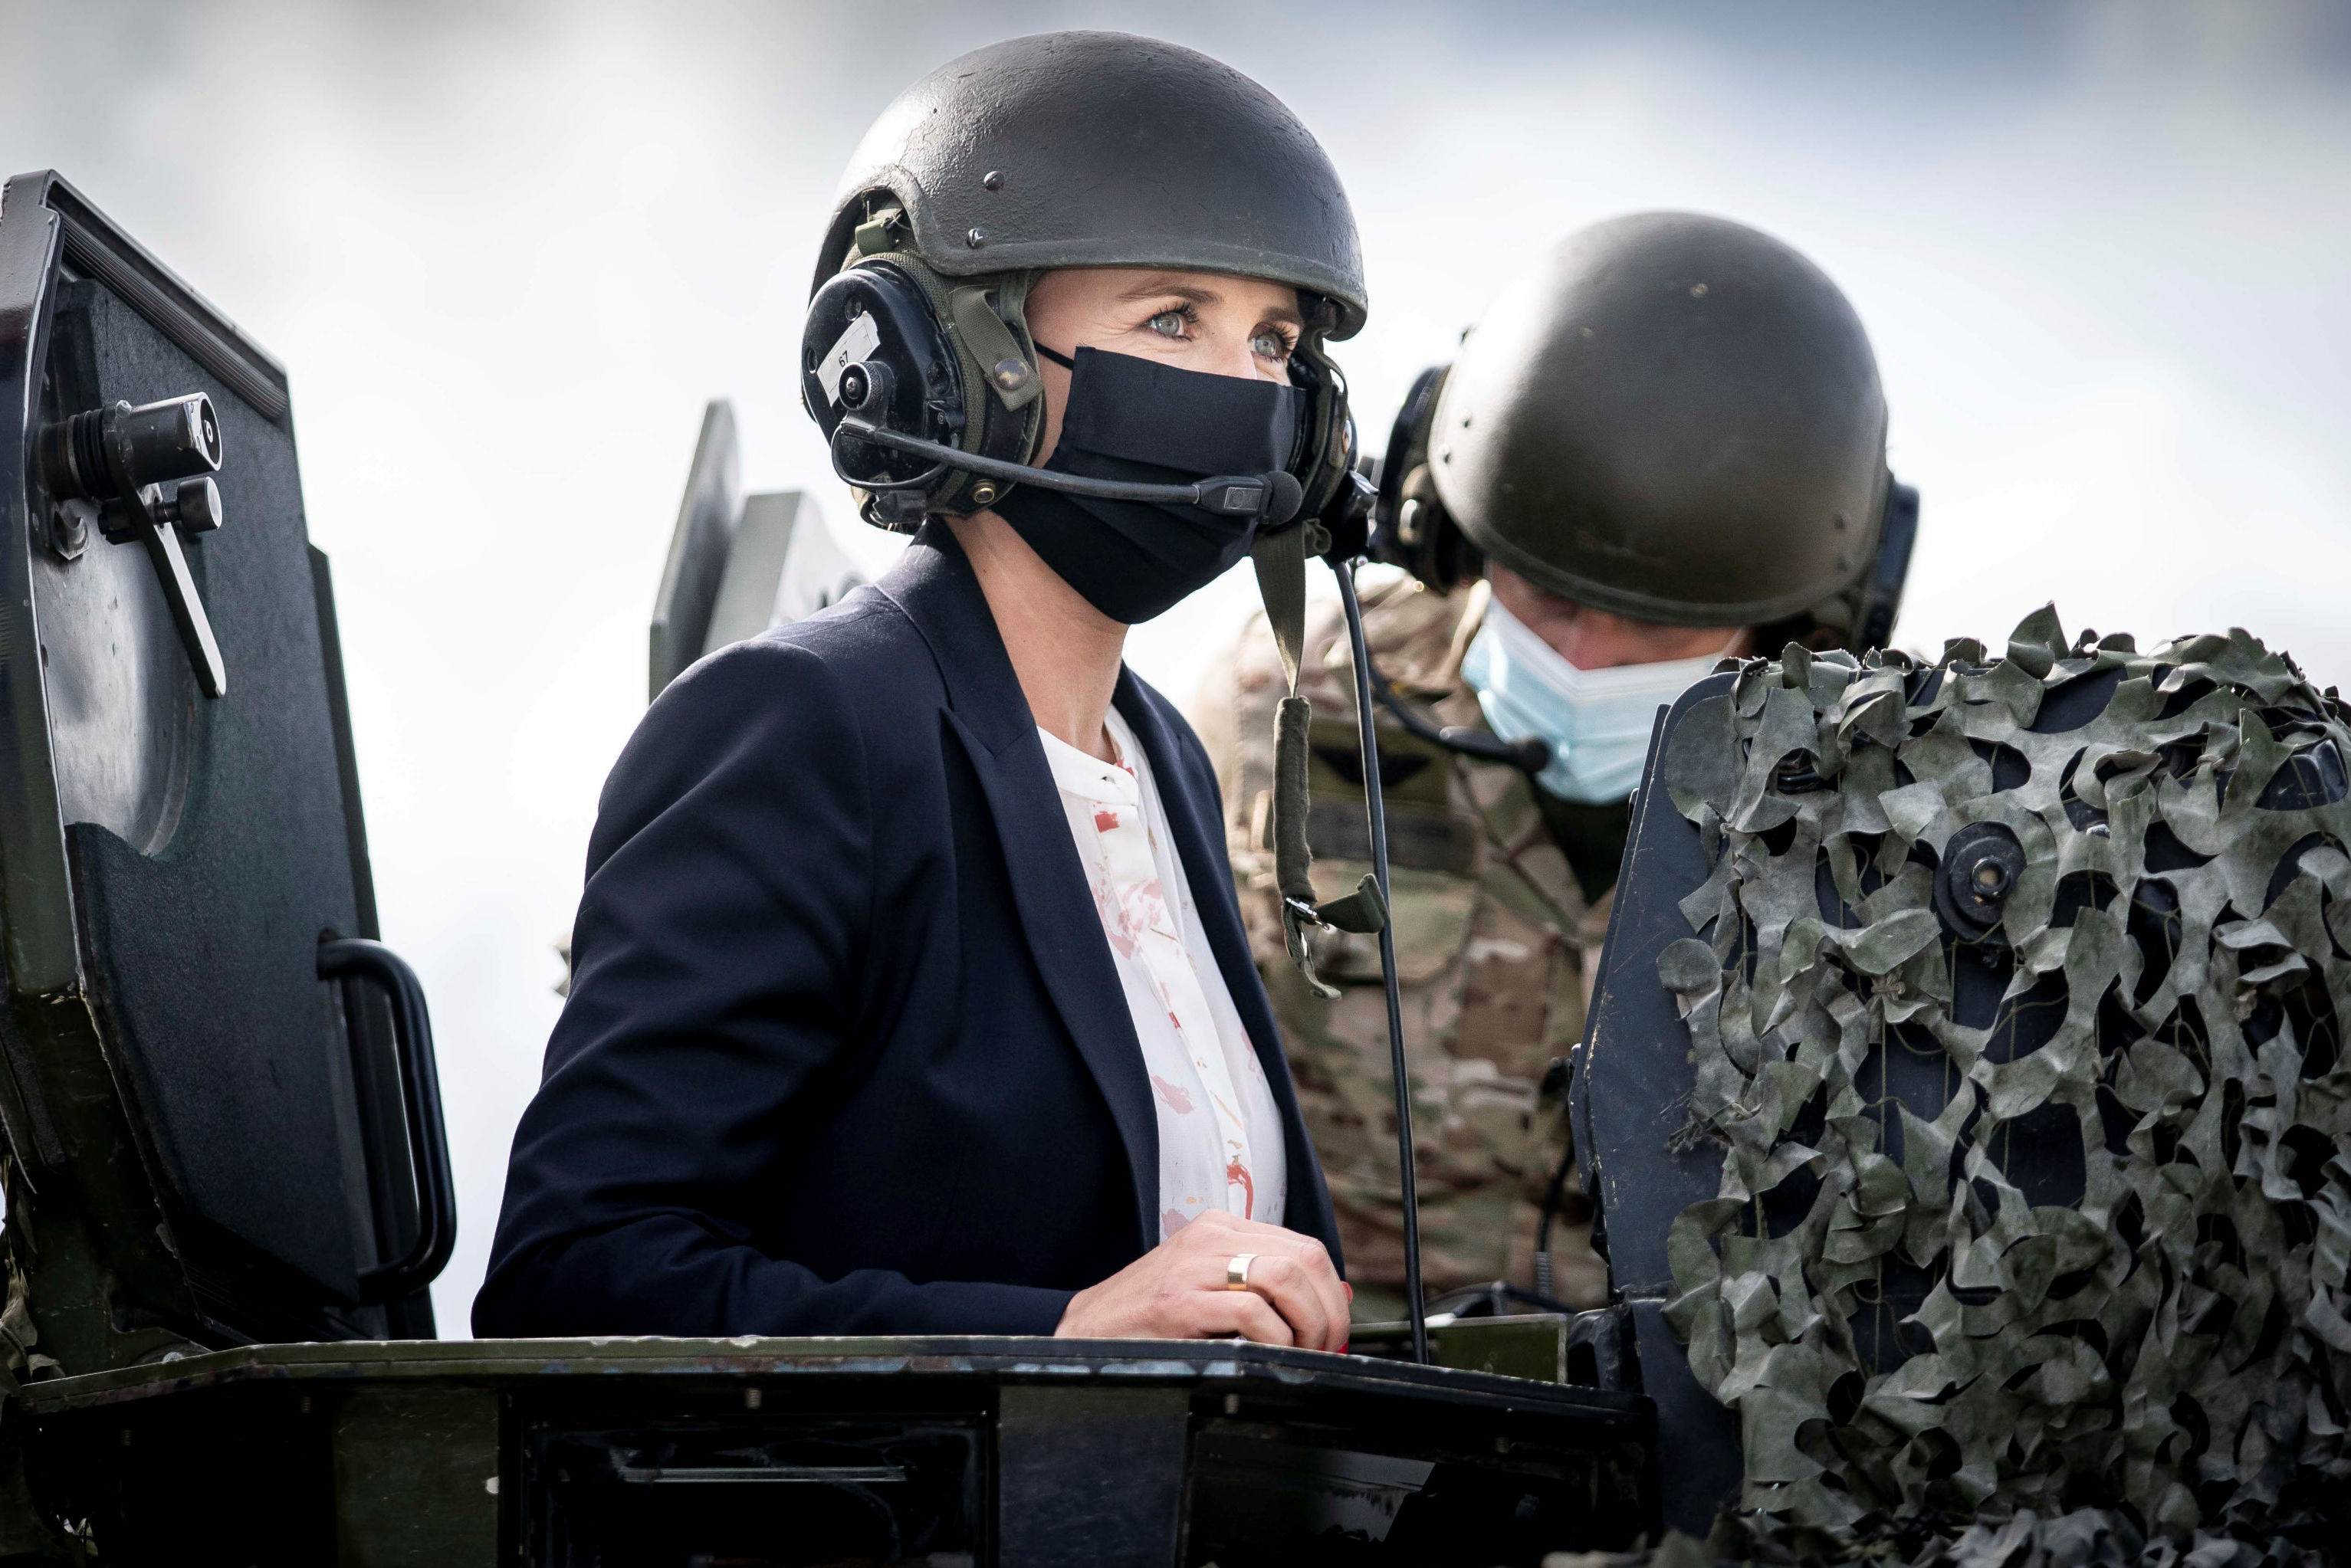 Премьер-министр Дании Метте Фредериксен на военной базе НАТО в Тапа